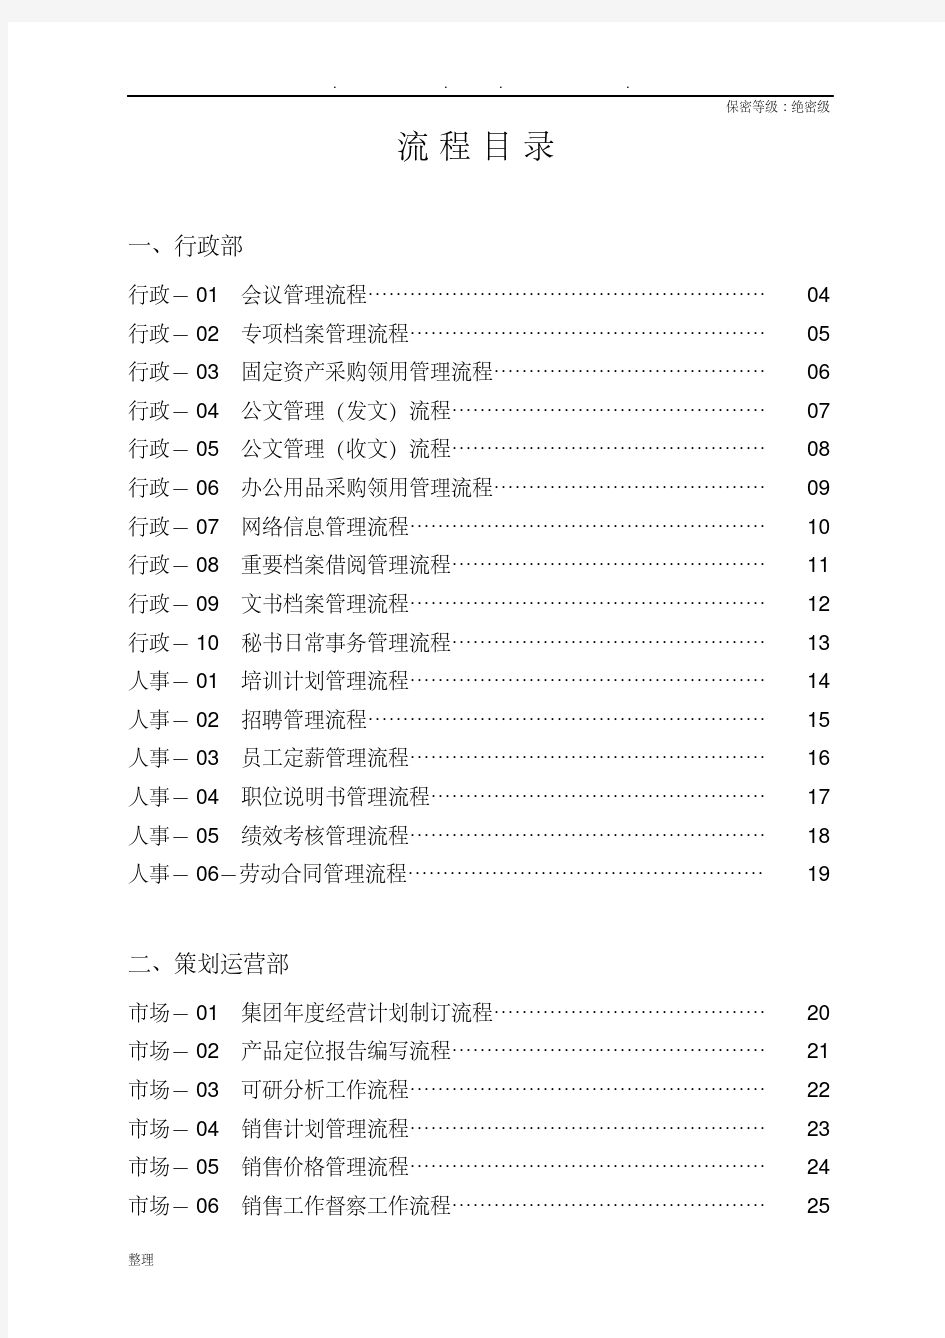 碧桂园集团全套管理流程图.pdf